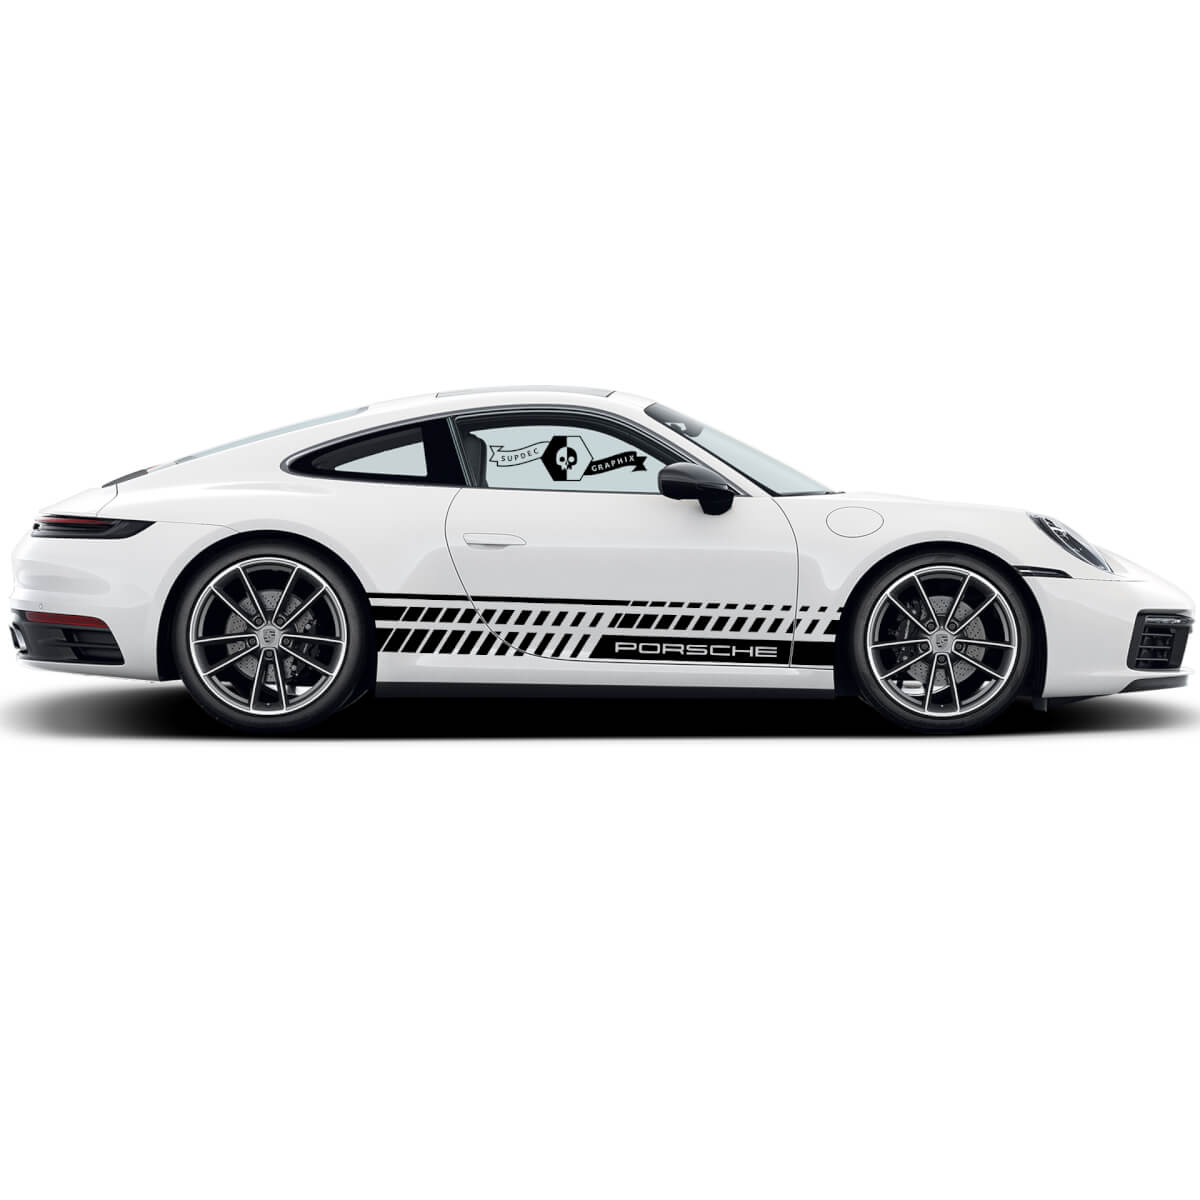 2 Porsche 911 Porsche Carrera Rocker Paneel Viele abfallende Linien Seitenstreifen Türen Kit Aufkleber Aufkleber